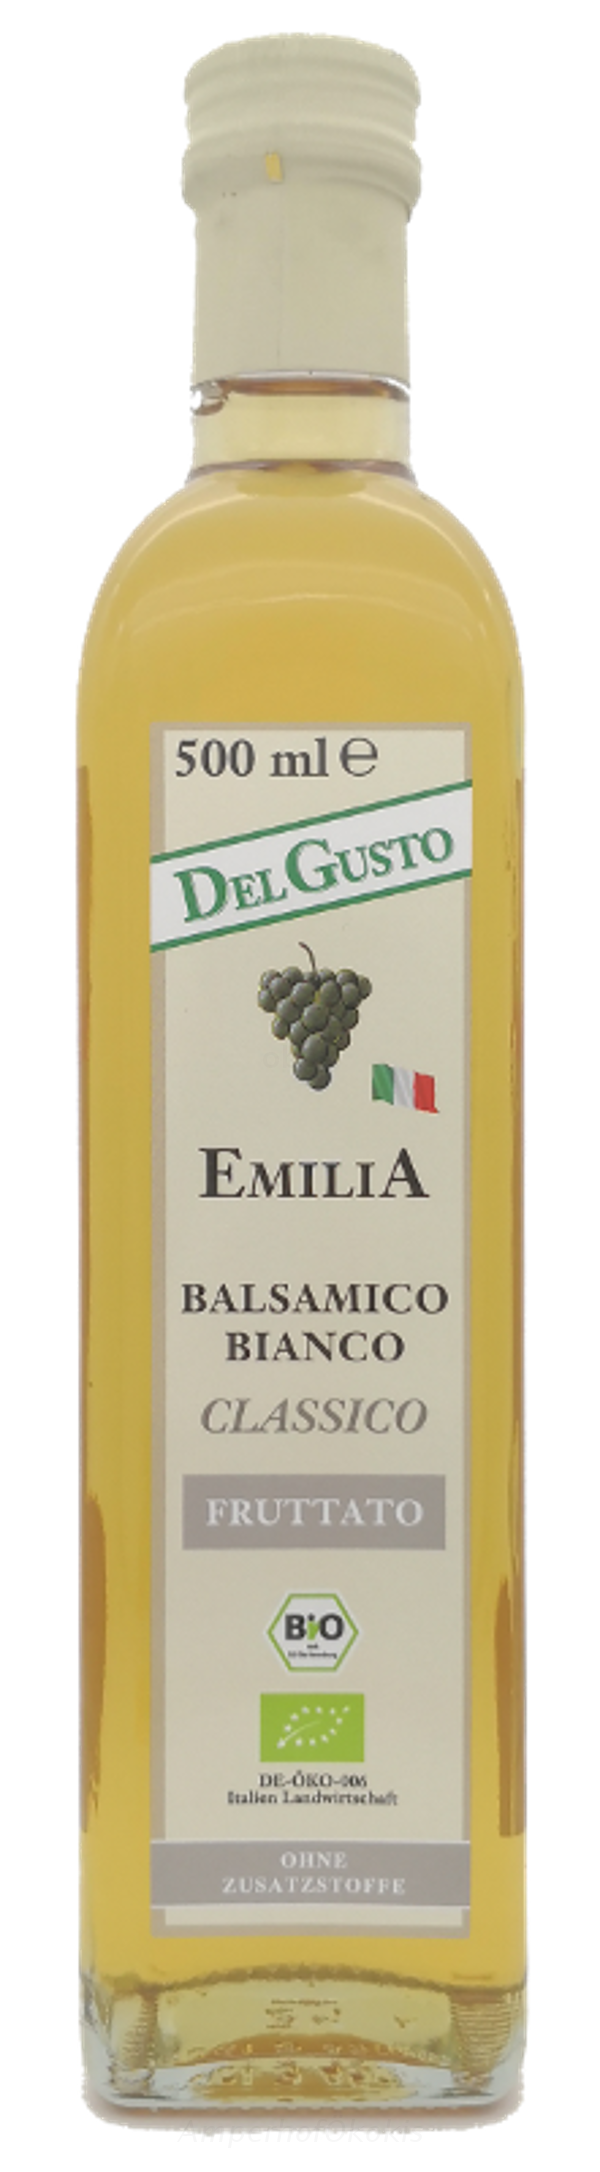 Produktfoto zu Del Gusto Balsamico Bianco CLASSICO 500 ml